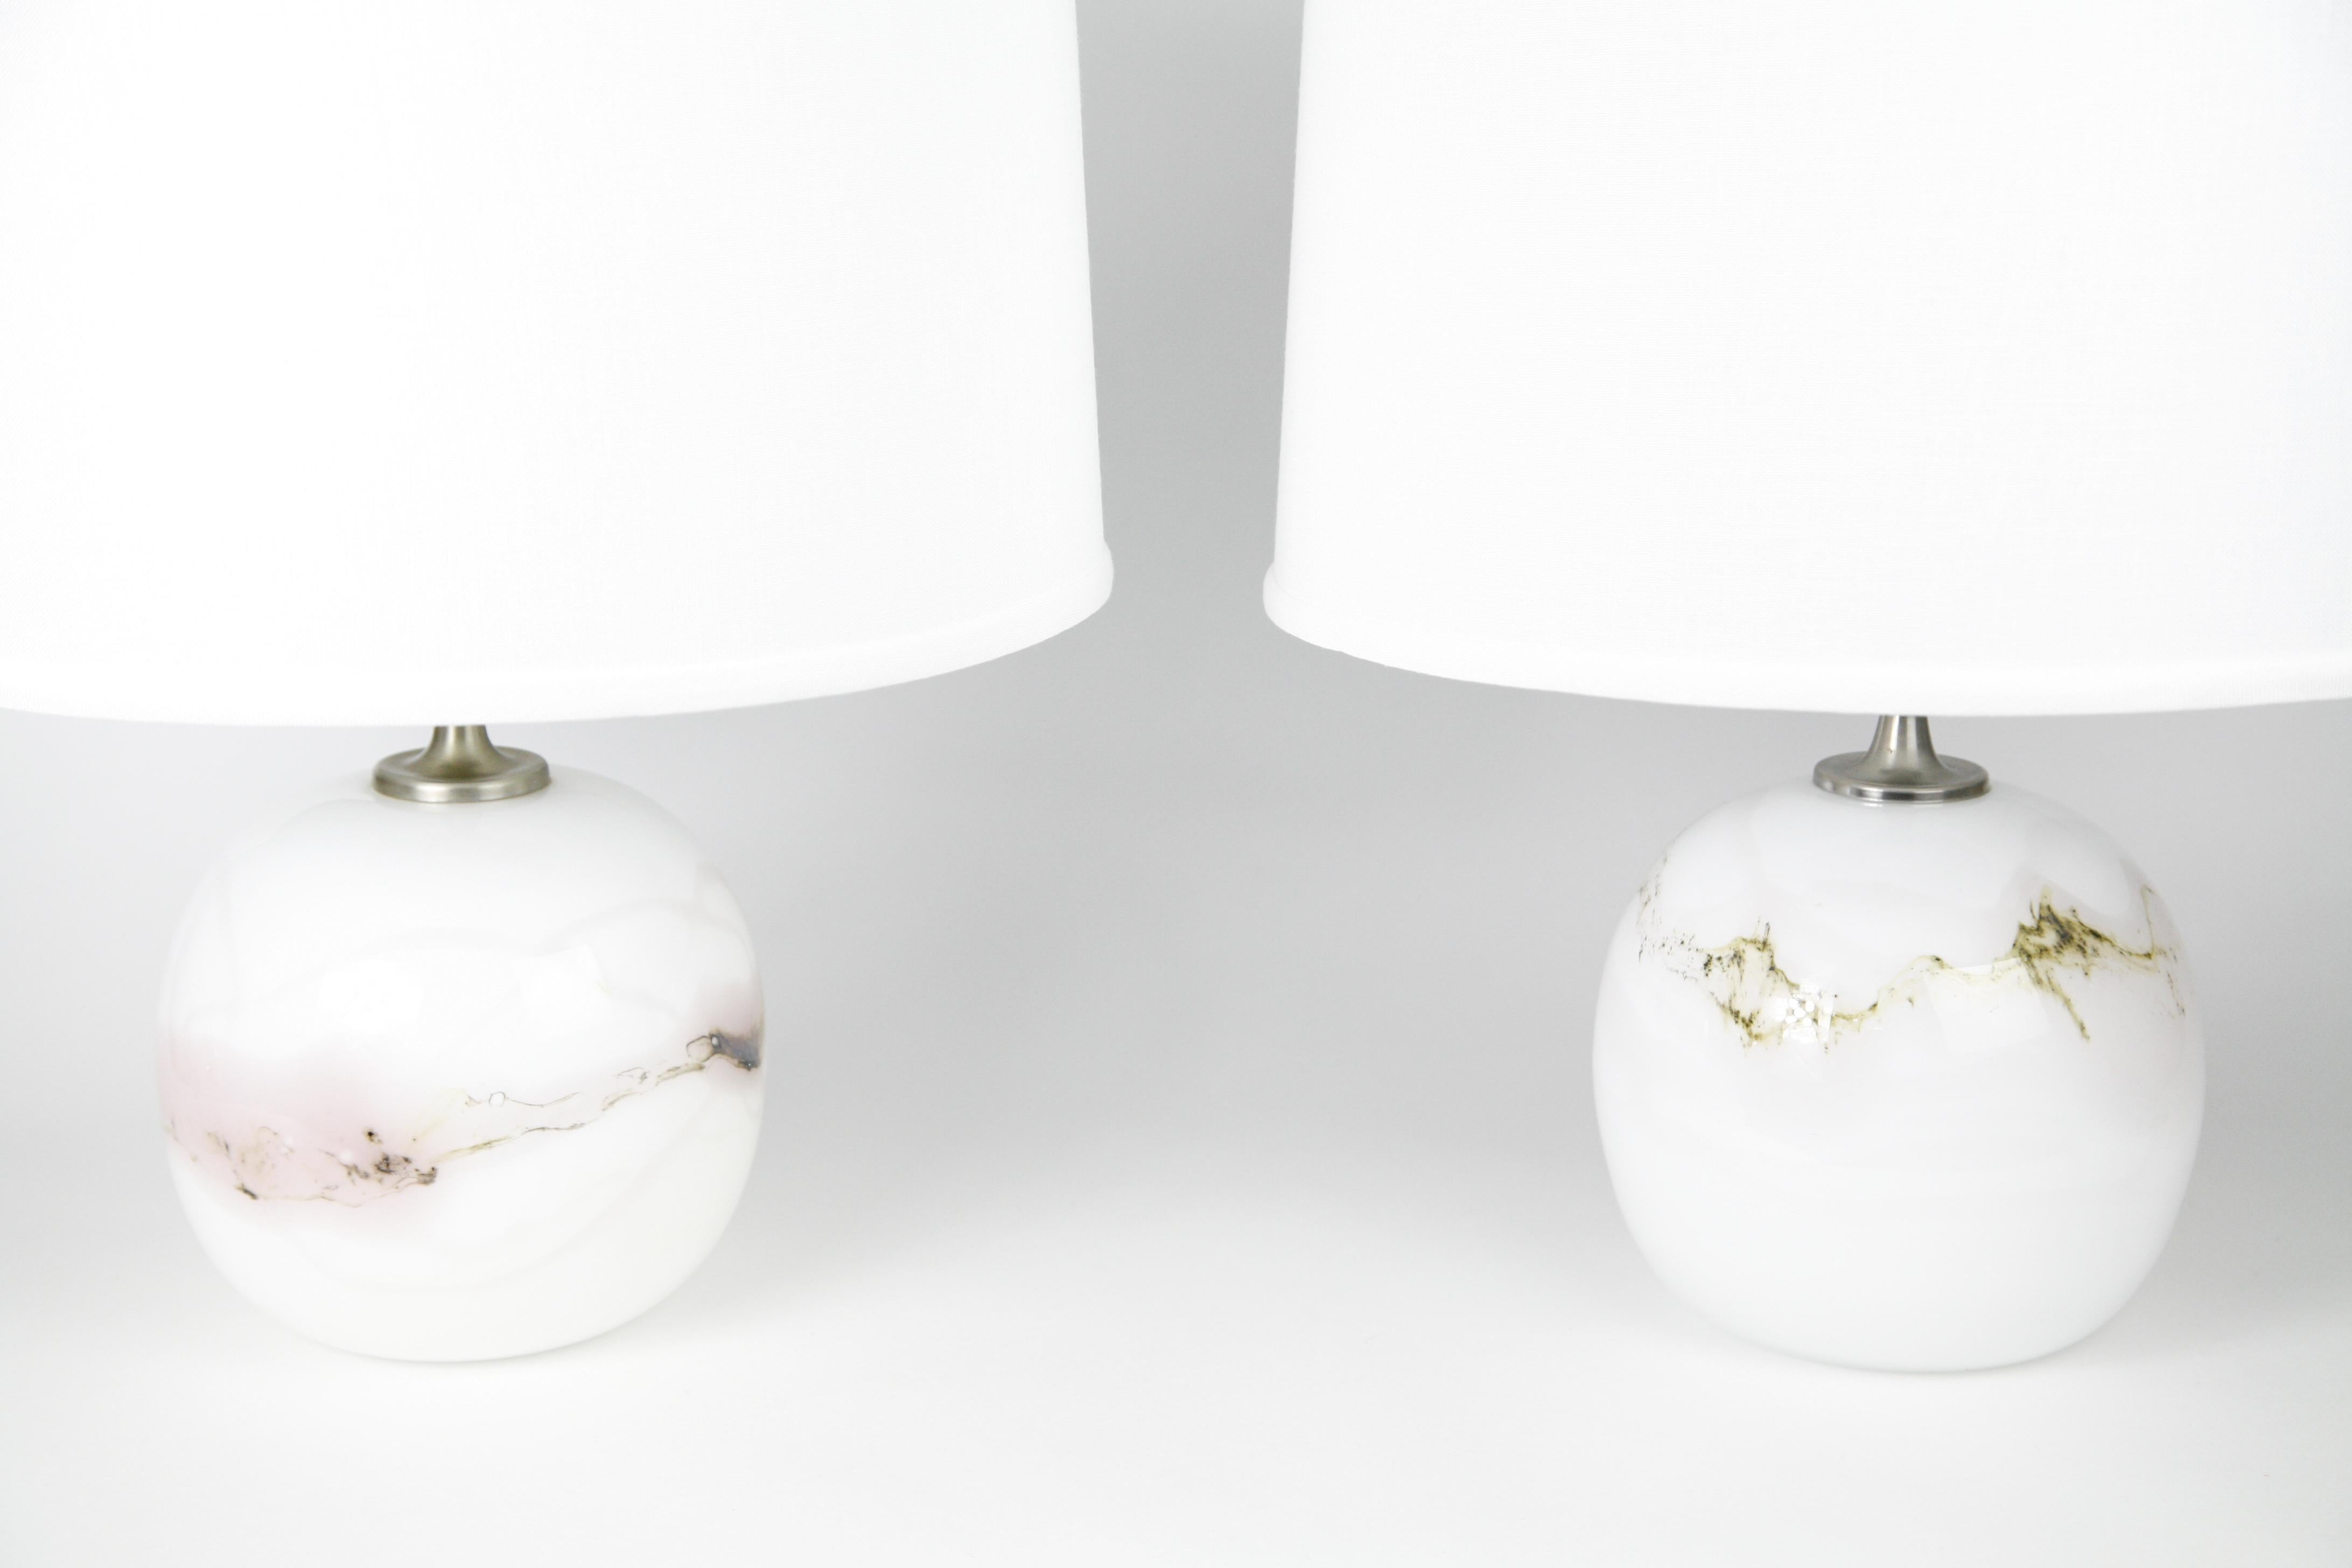 Deux lampes Holmegaard avec des accessoires en acier brossé par Holmegaard, Danemark, 1984 en blanc avec une variété de couleurs mélangées dans y compris le verre rose fondu sous-jacent le verre clair lisse conçu par Michael Bang, 1984.
La hauteur